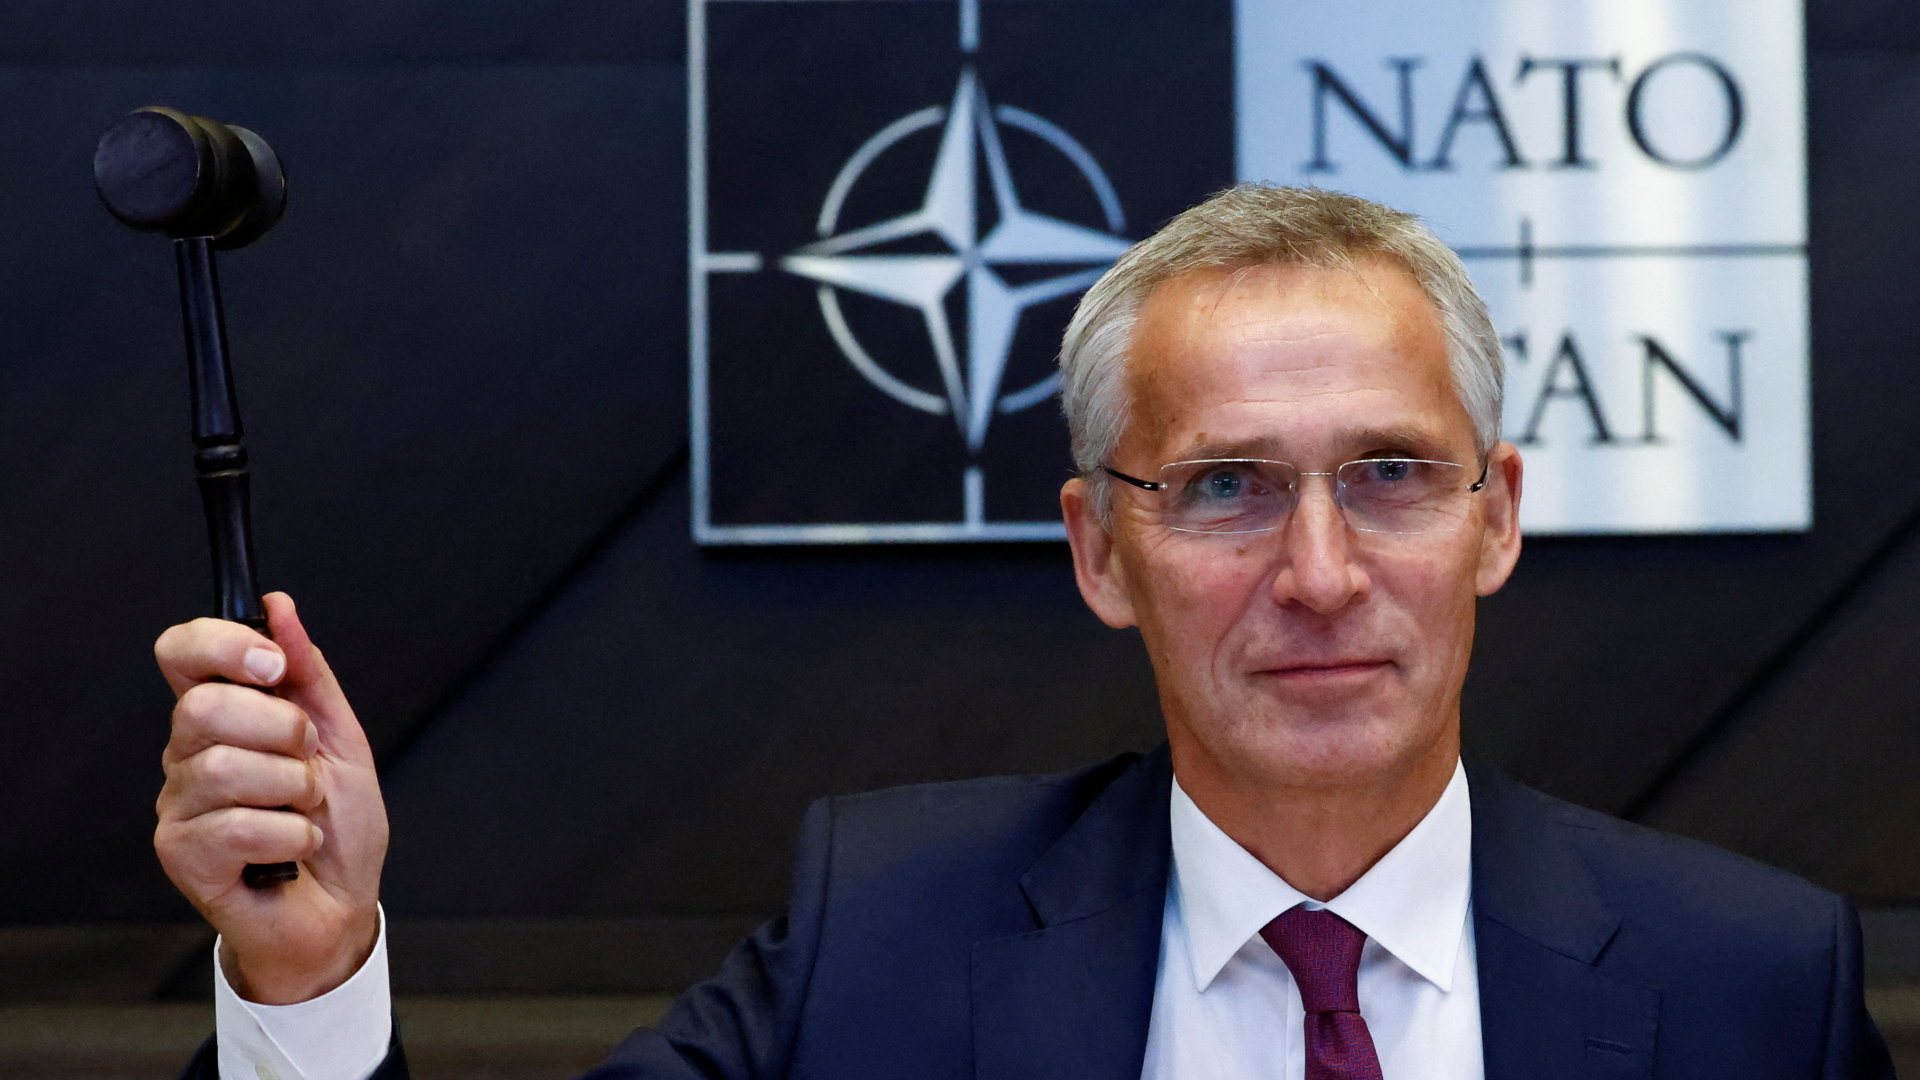 NATO liefert Ukraine Störsender gegen Drohnenangriffe